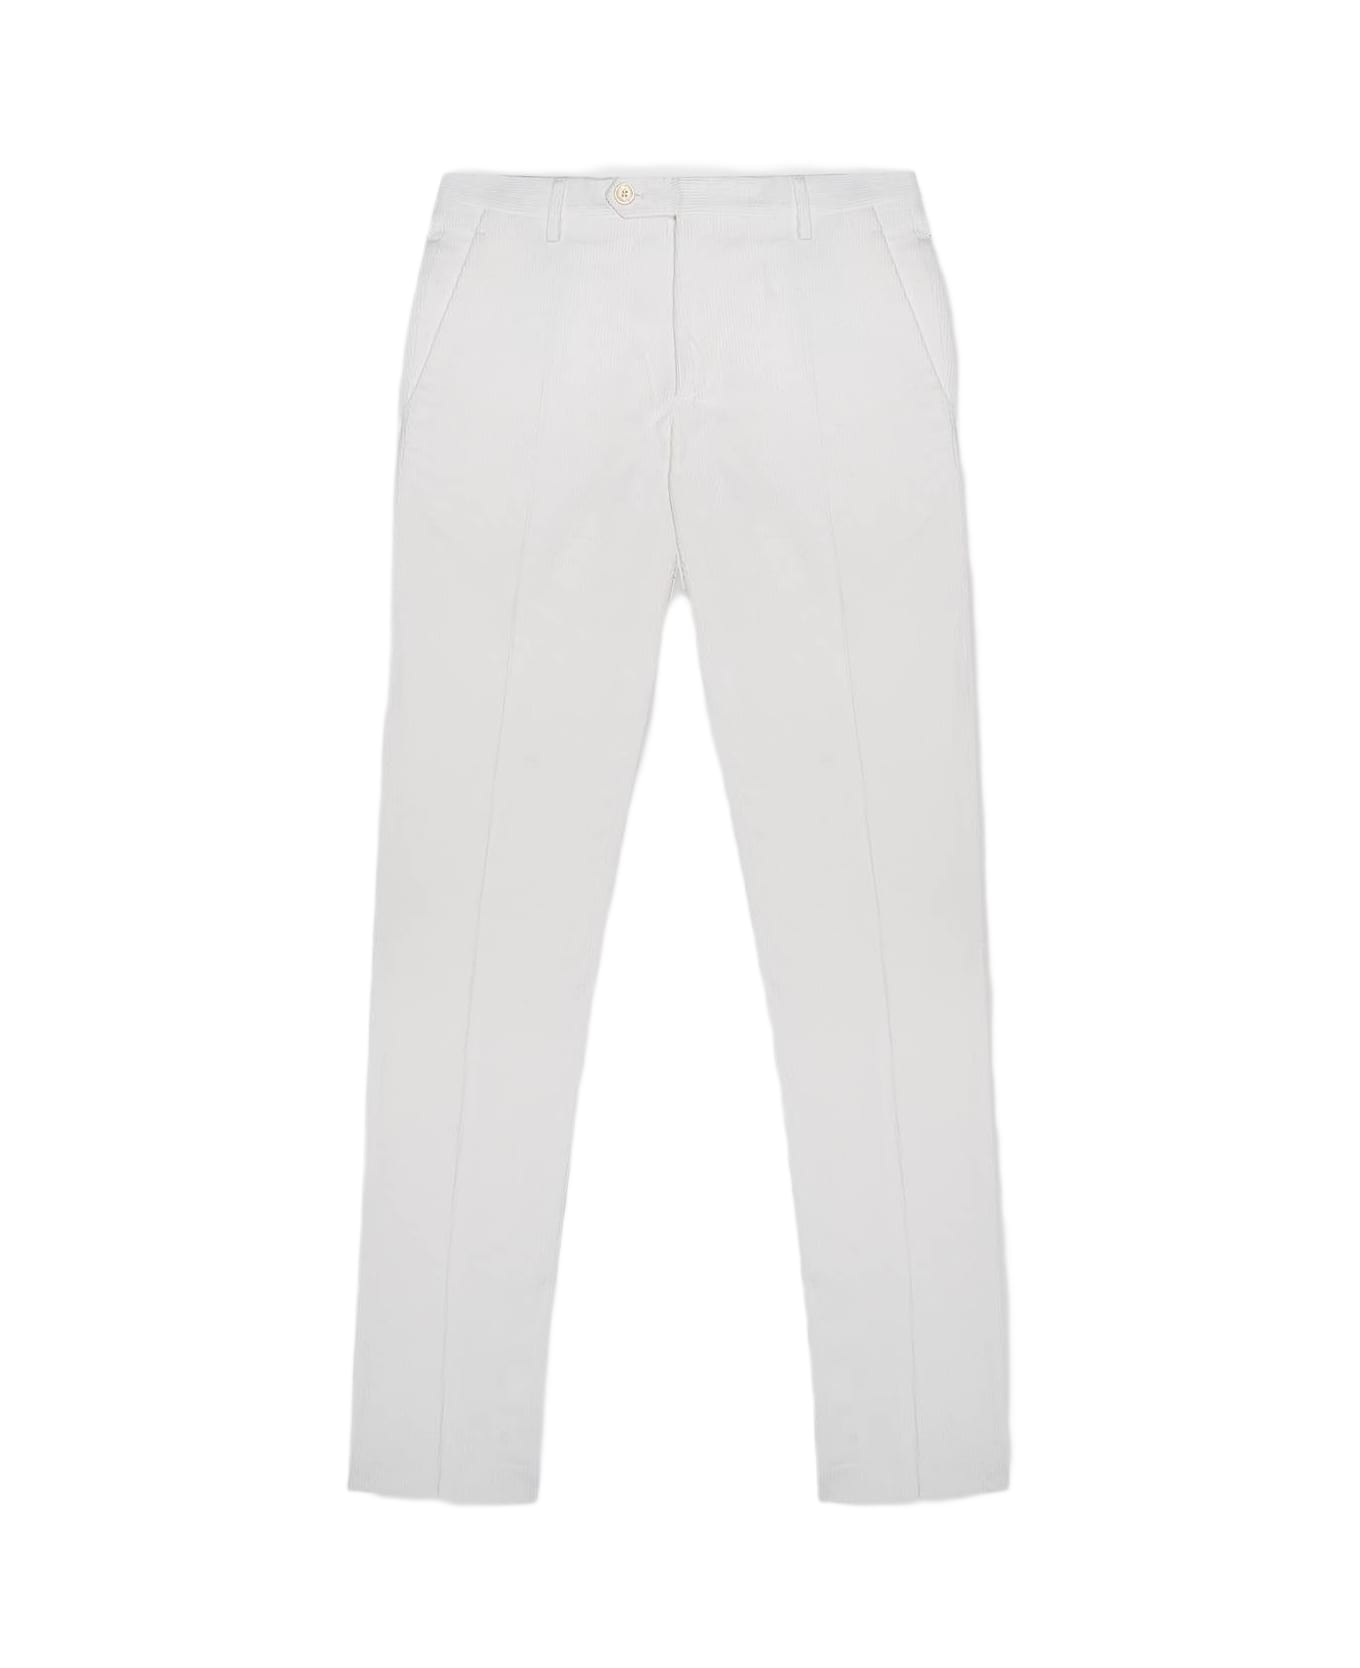 Larusmiani Velvet Gaultier Trousers 'howard' Pants - White